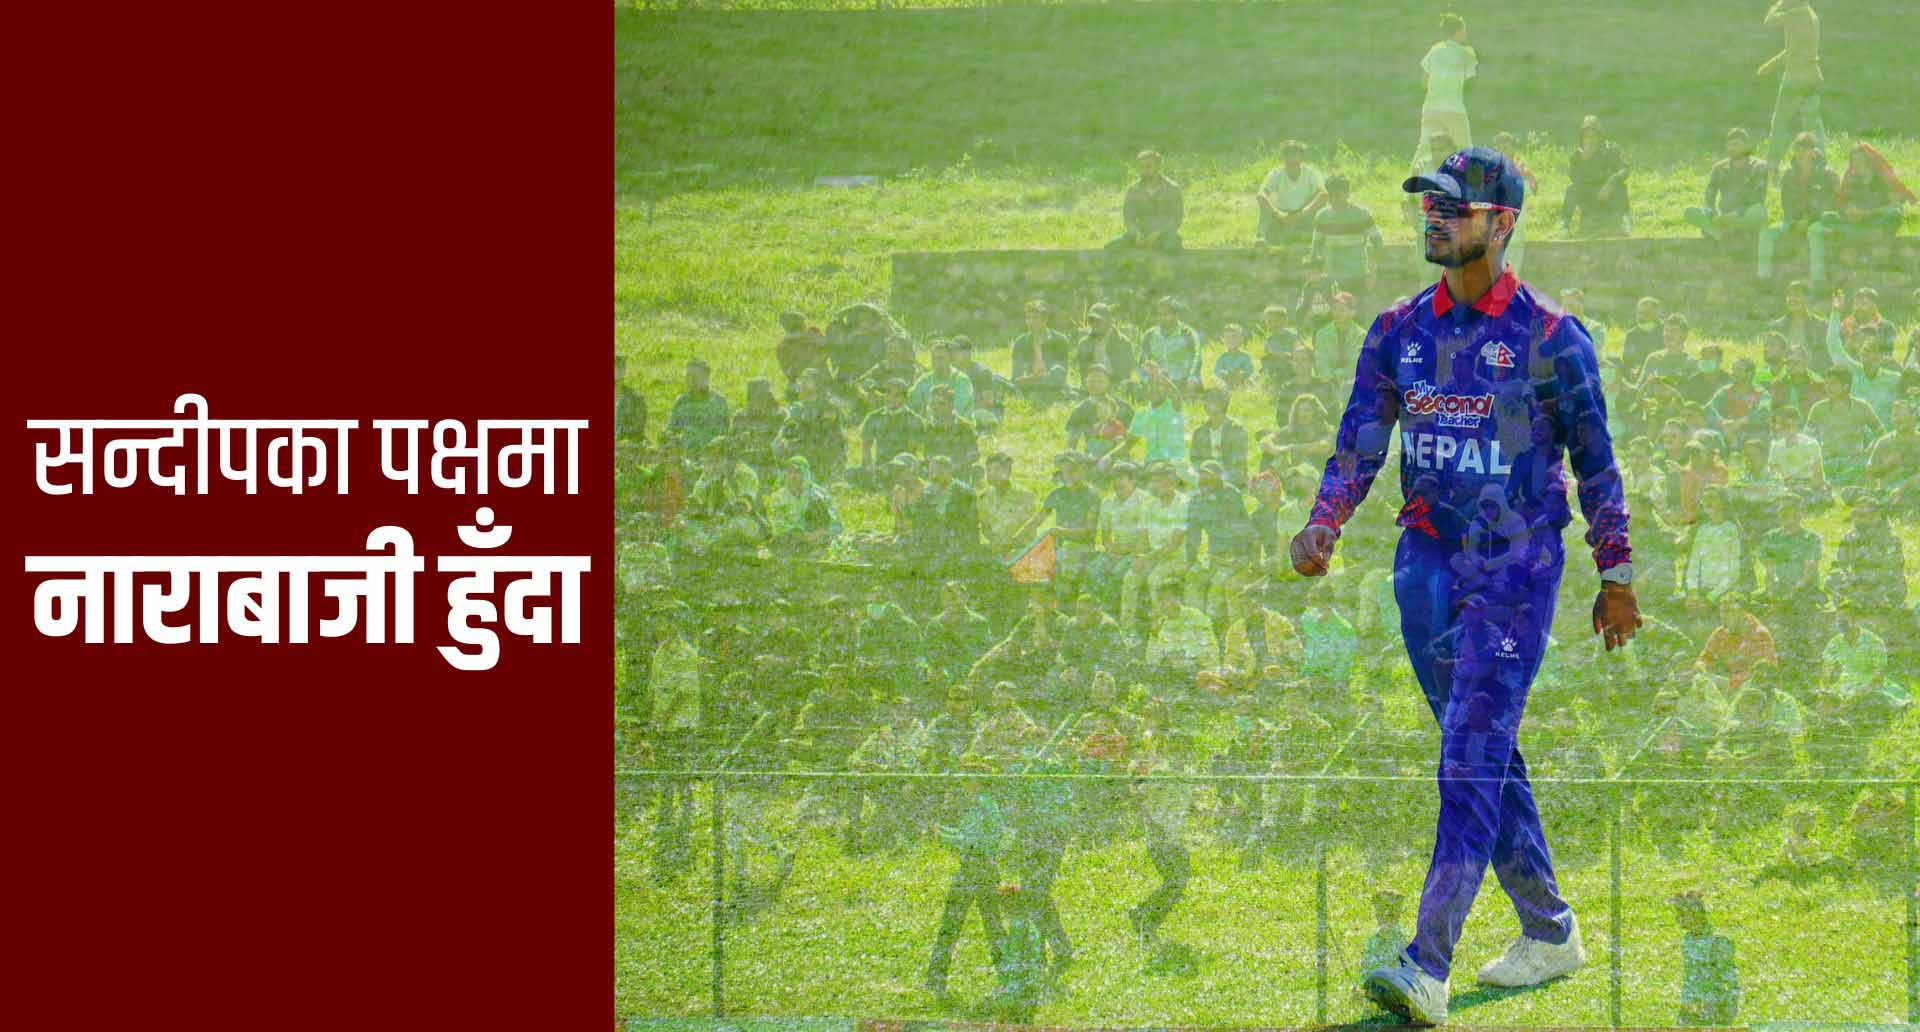 सन्दीपका पक्षमा नाराबाजी: नेपाली क्रिकेटमाथि प्रश्न